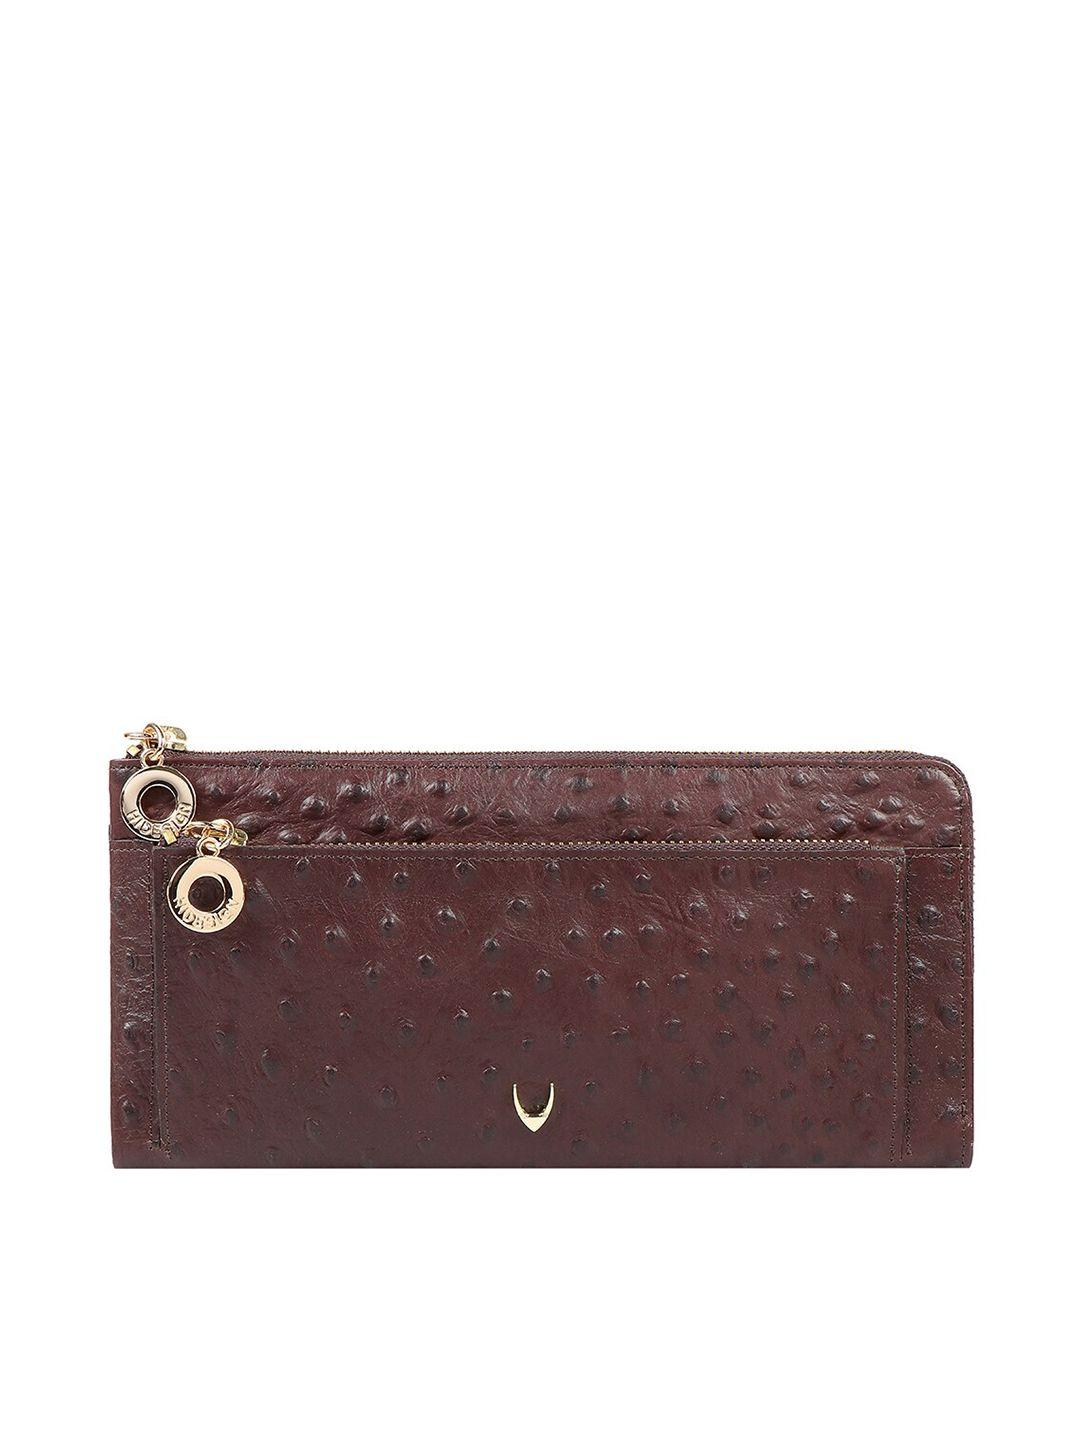 hidesign brown textured purse clutch